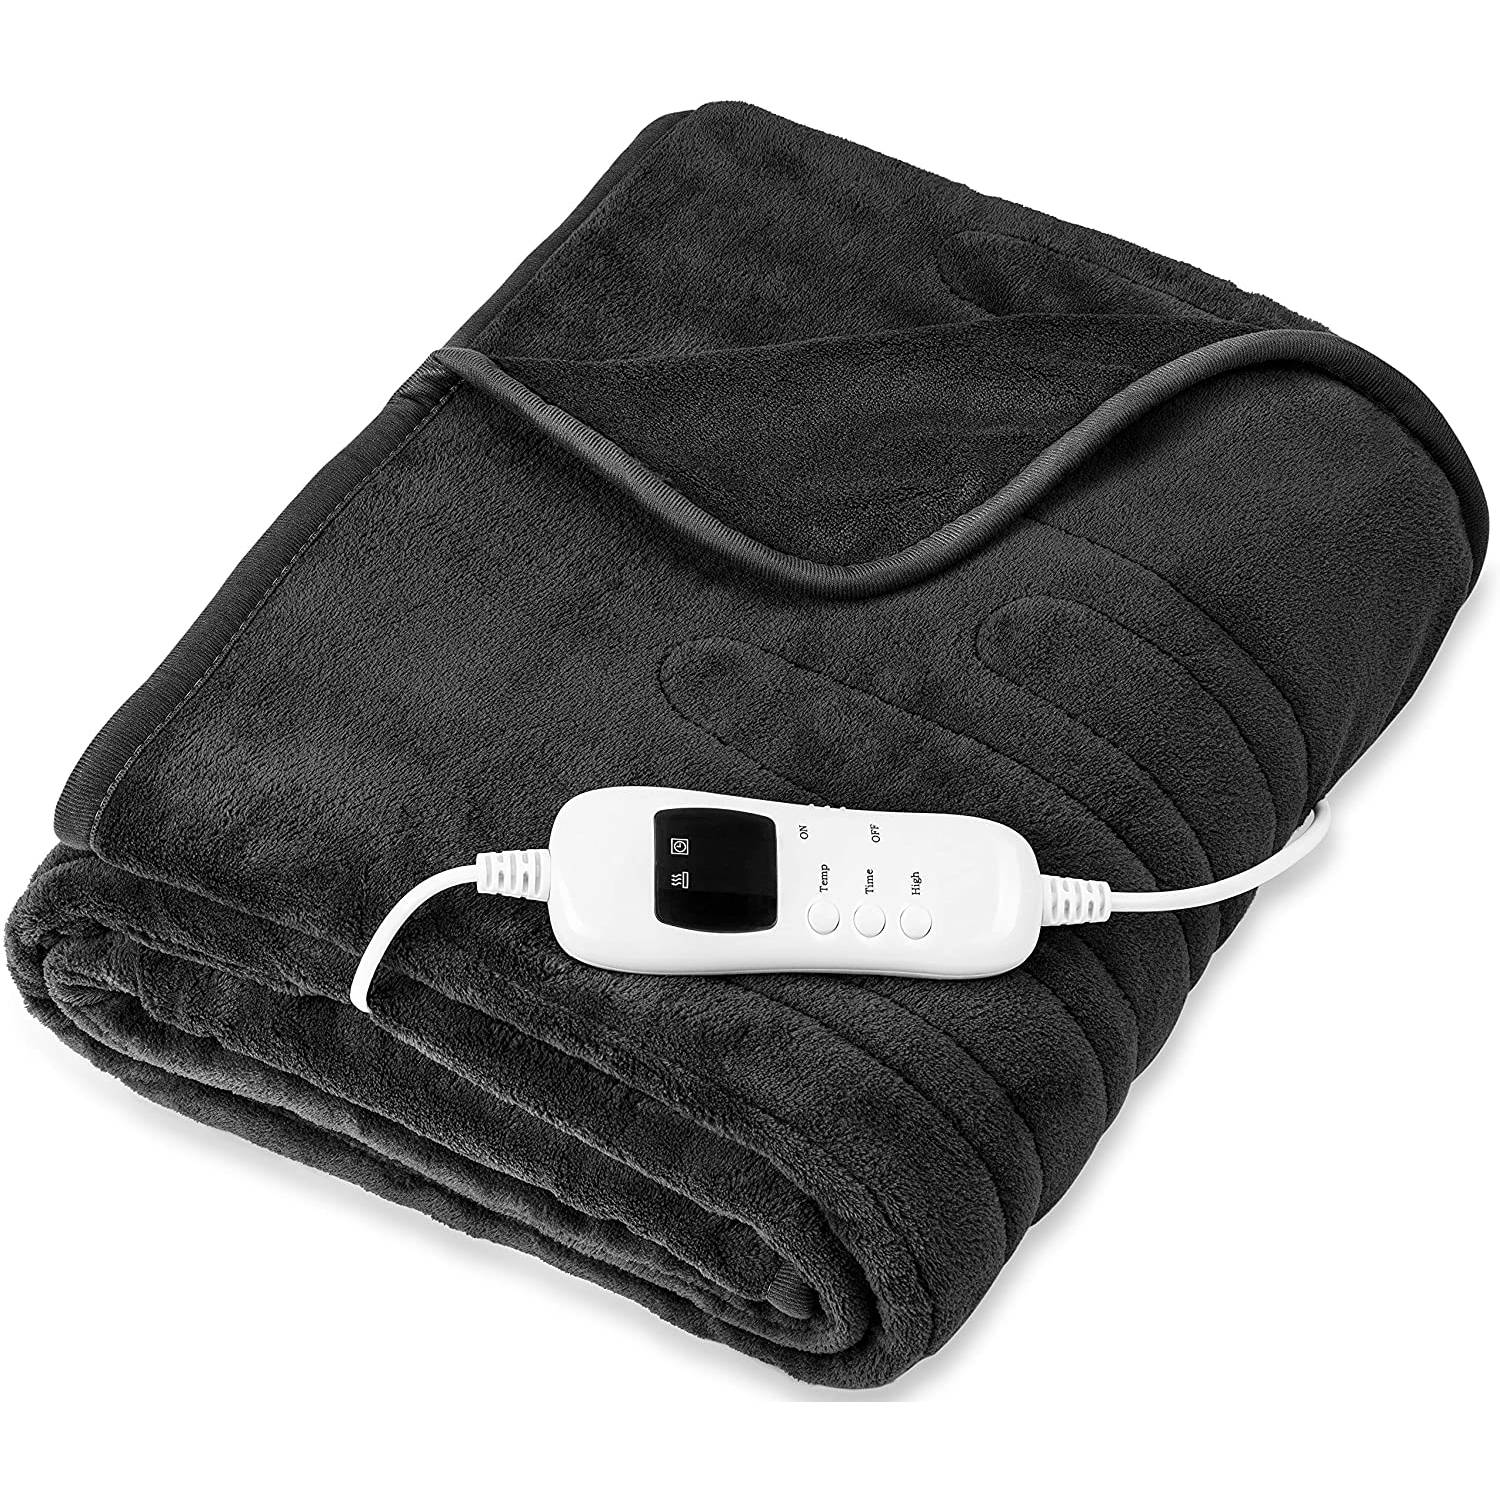 Sinnlein- Elektrische deken, antraciet, verwarmde deken, XXL verwarmingsdeken, 160 x 120 cm, automatisch uitschakelen